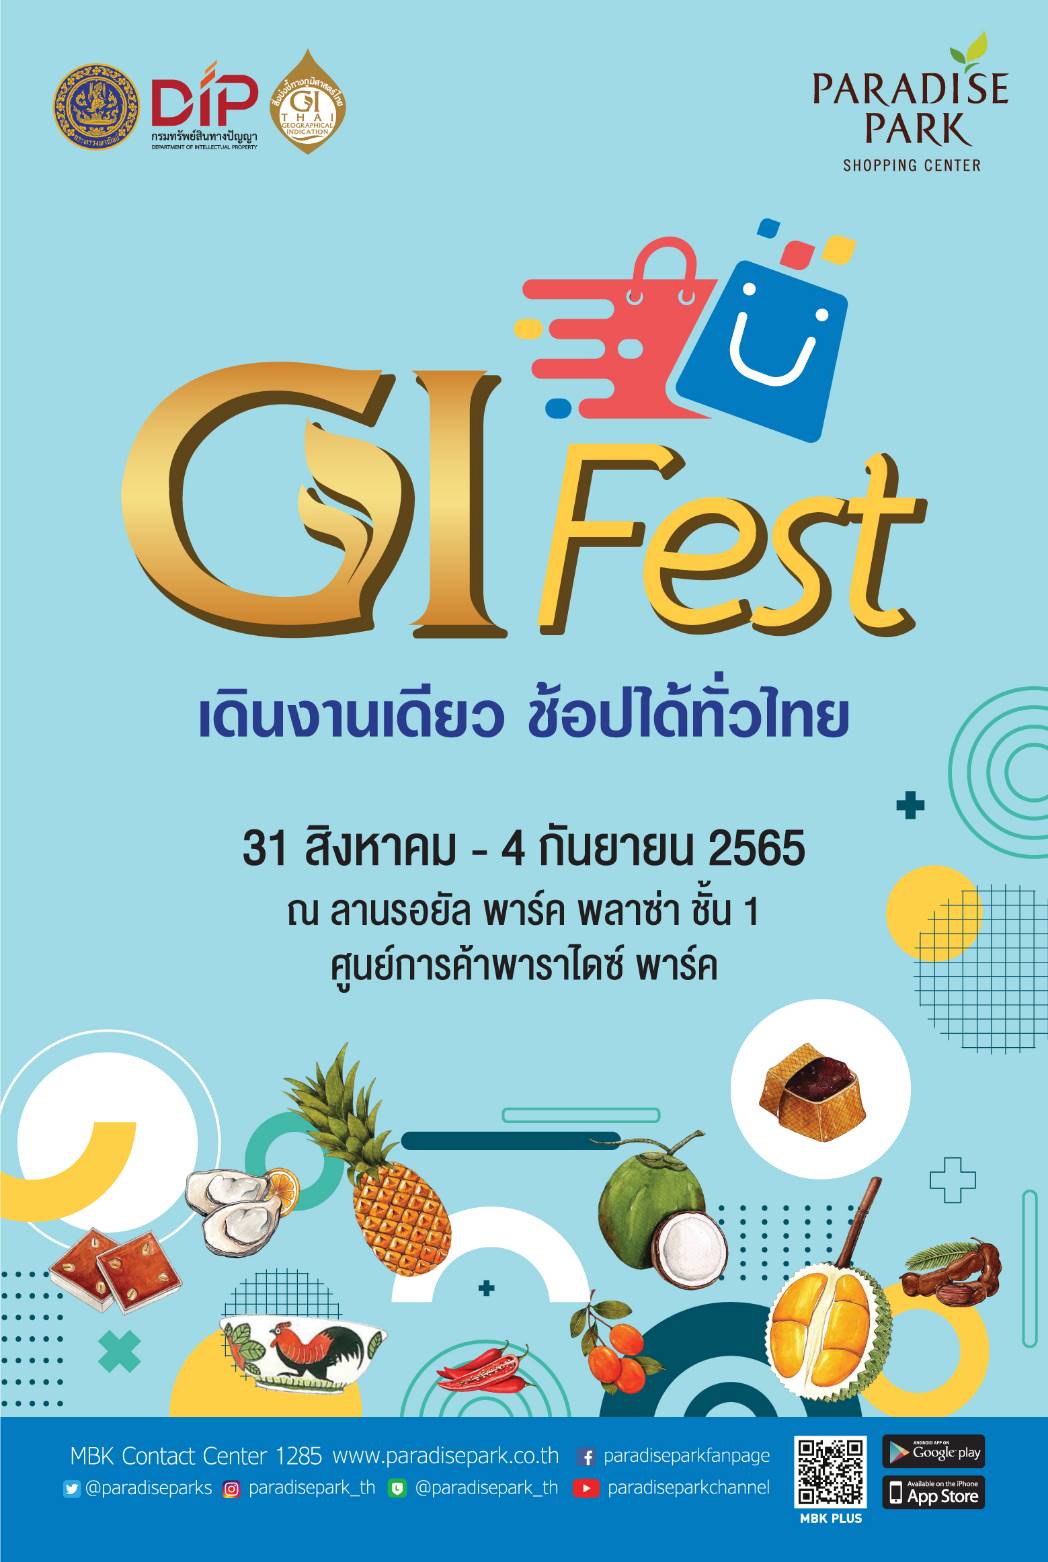 พาราไดซ์ พาร์ค ชวนช้อปของดีของแท้จากภูมิปัญญาท้องถิ่น ในงาน GI Fest เดินงานเดียว ช้อปได้ทั่วไทยตั้งแต่วันที่ 31 ส.ค. - 4 ก.ย. นี้